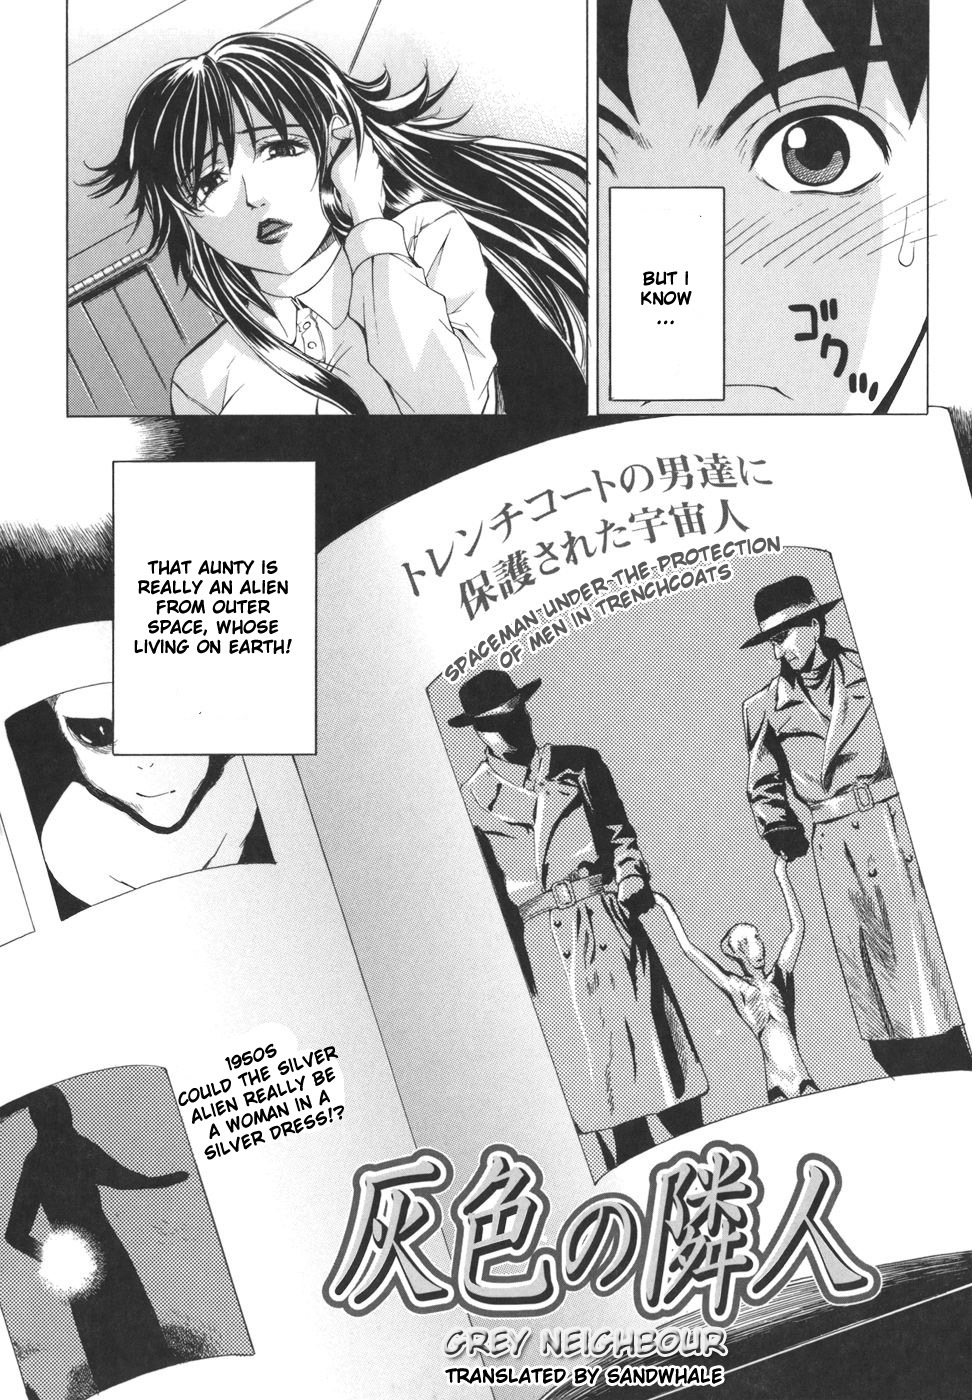 Pearl Rose 71 hentai manga